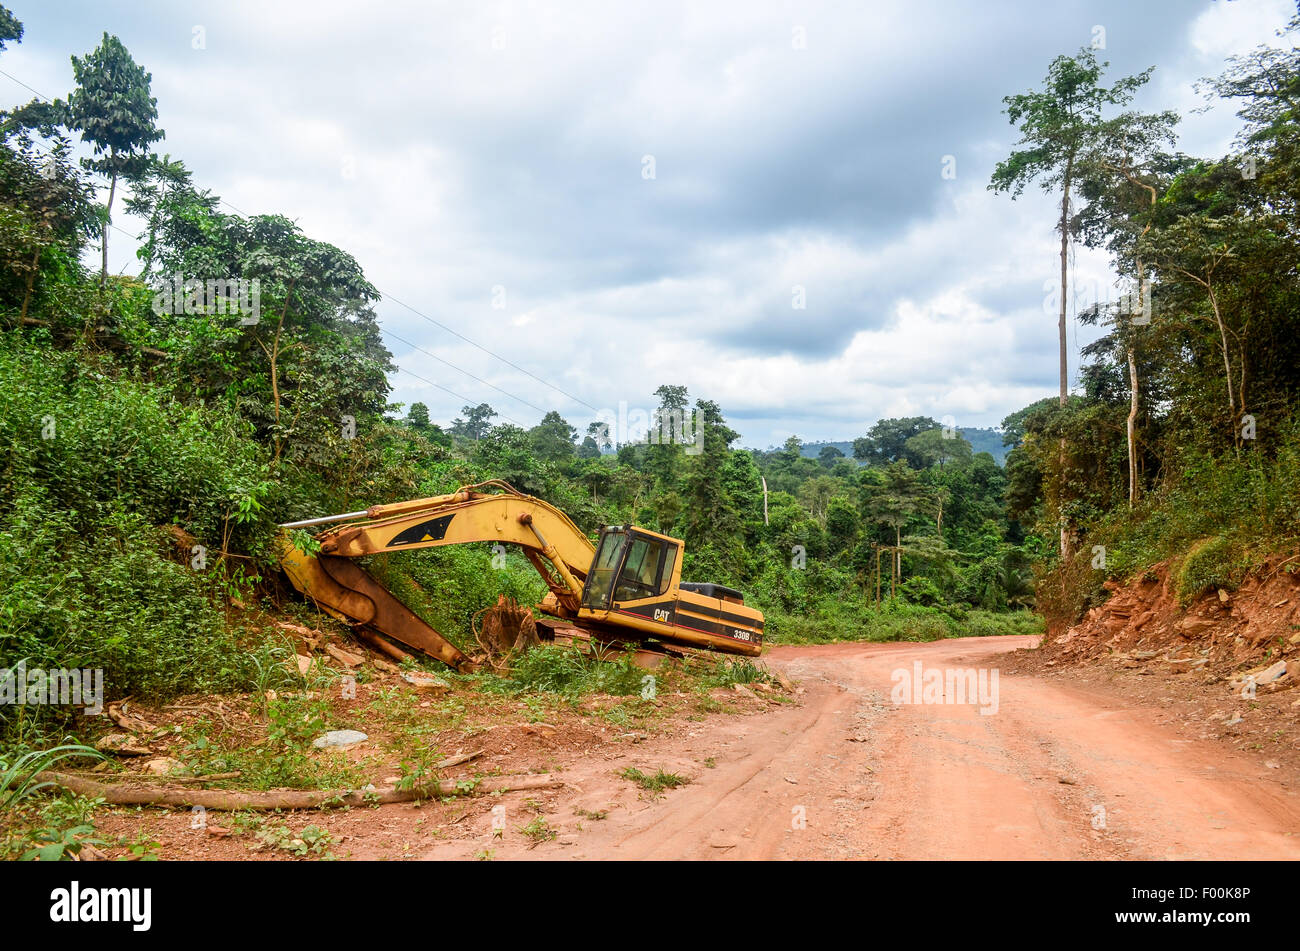 Excavadora abandonada al lado de un camino de tierra en las zonas rurales de Ghana Foto de stock